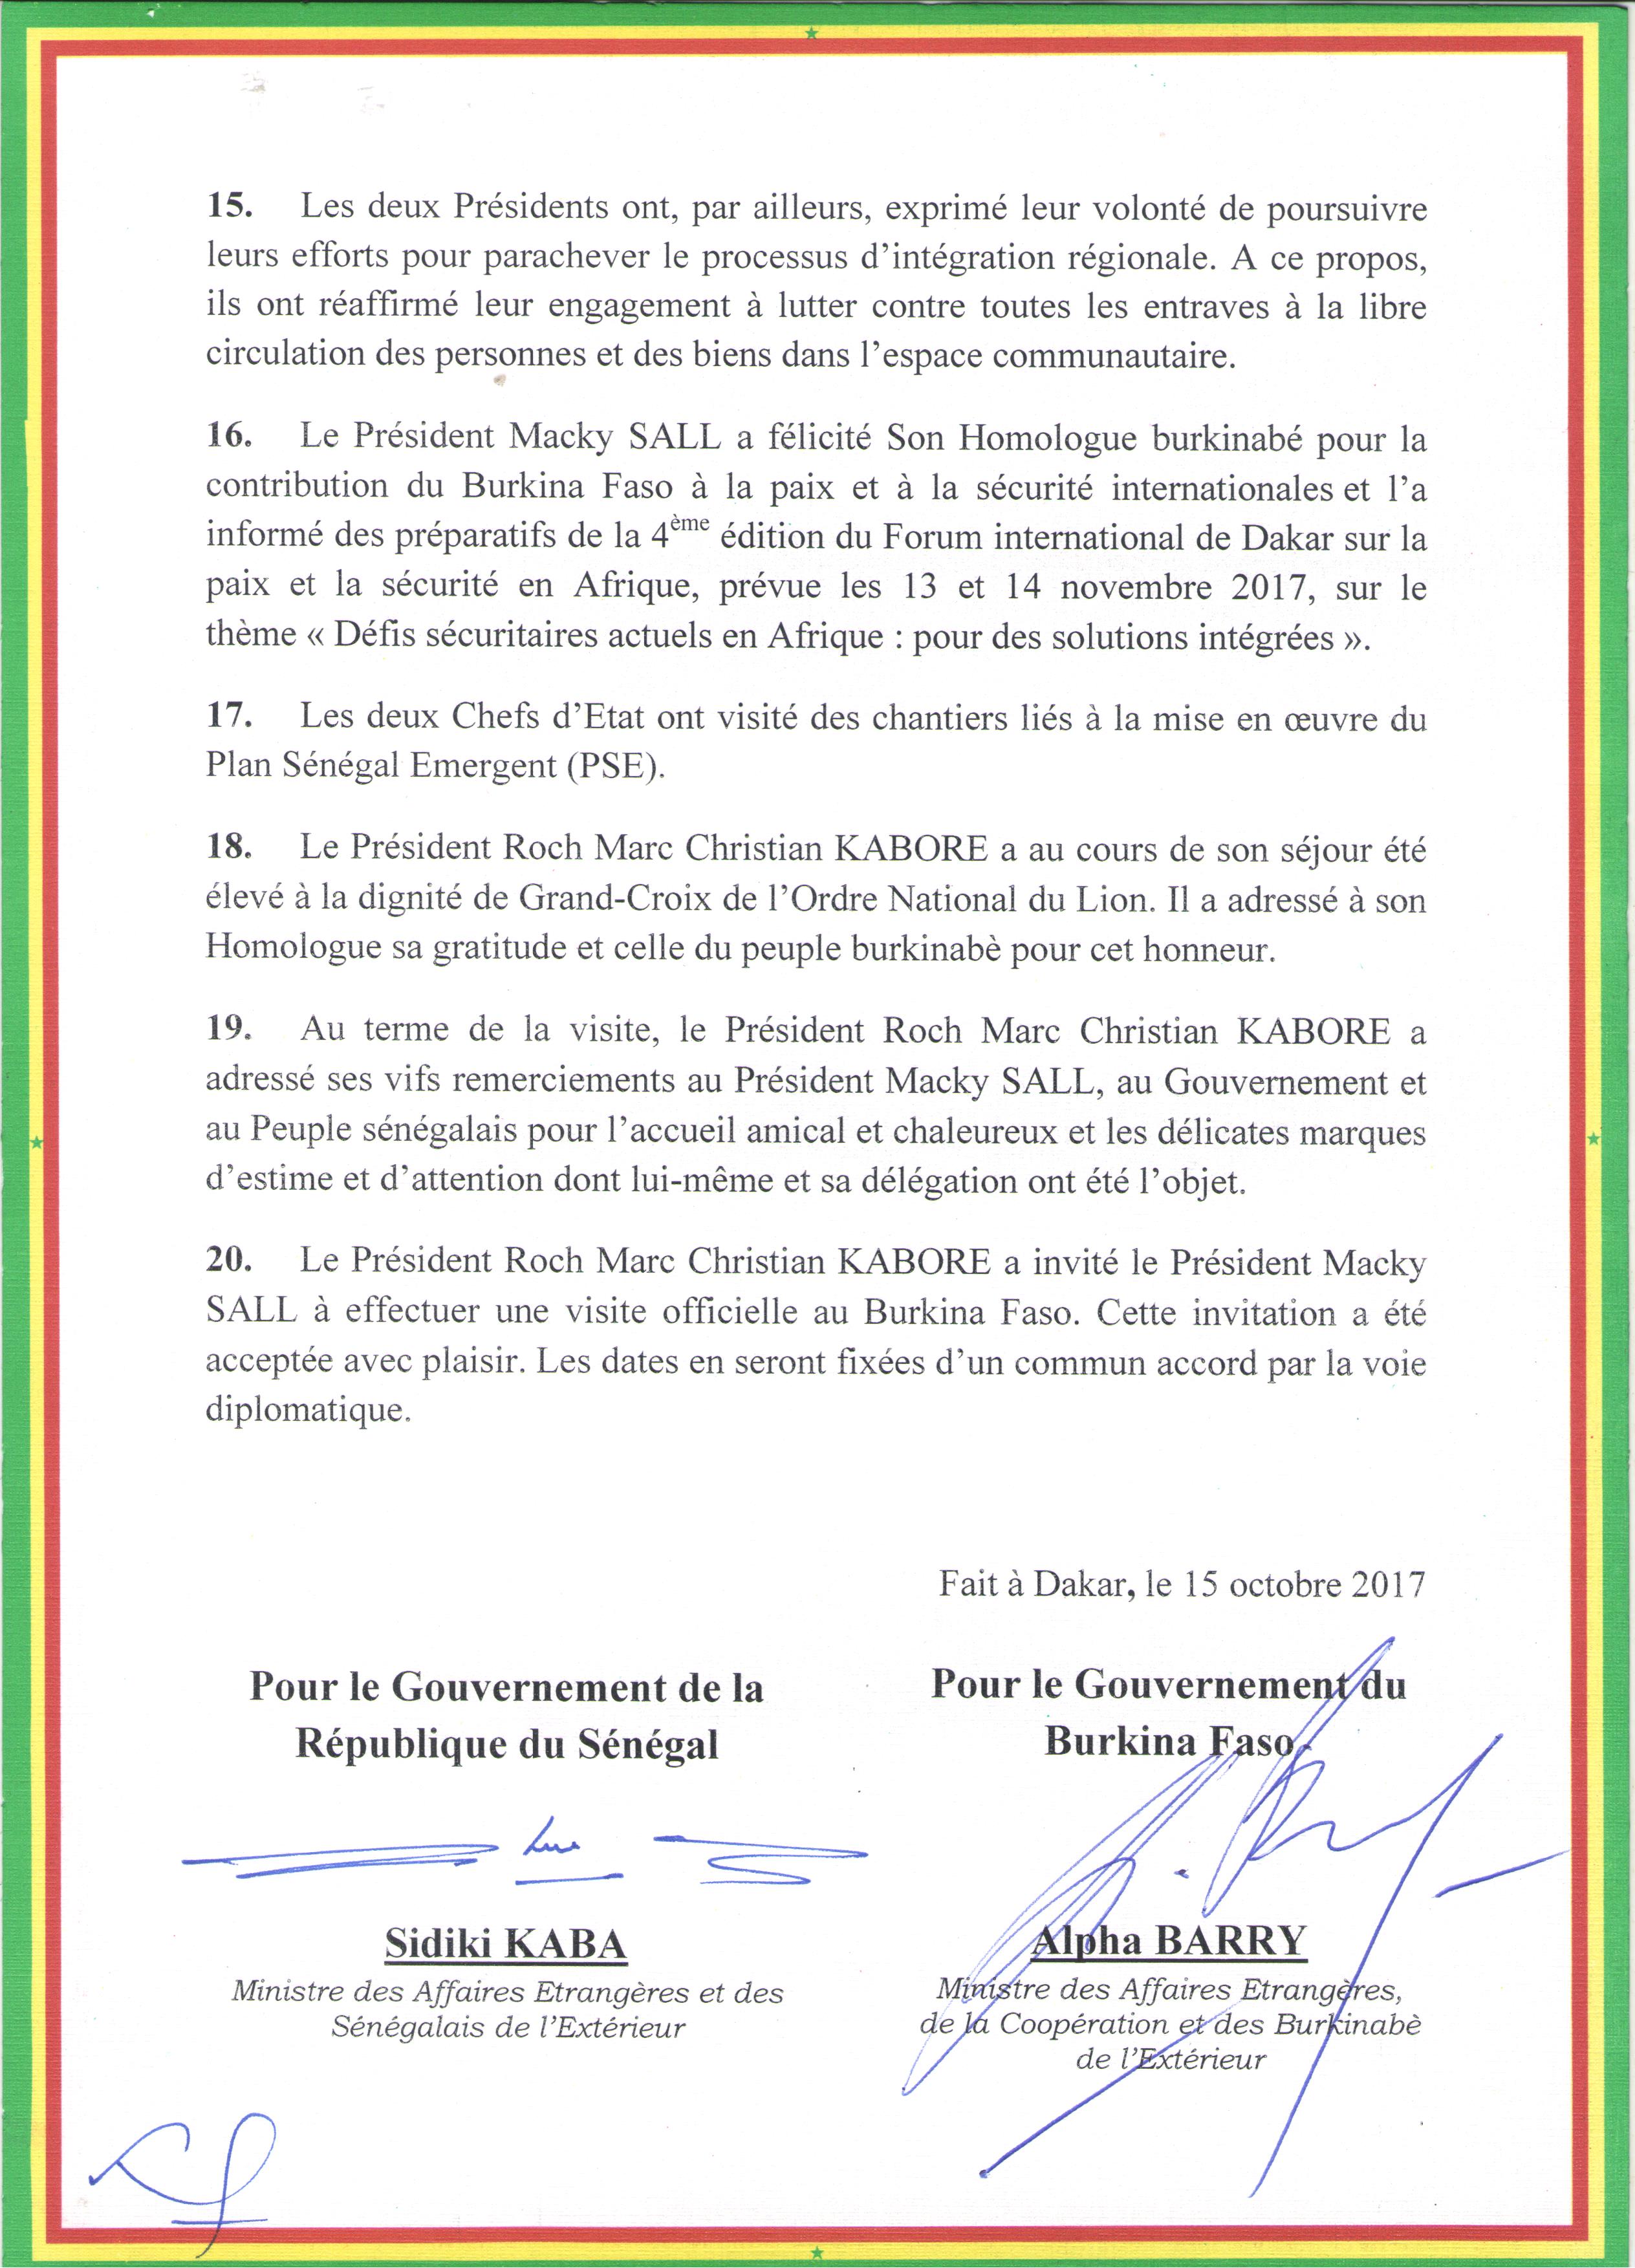 Communiqué conjoint à l'issue de la visite officielle au Sénégal de SEM Roch Marc Christian KABORE au Sénégal (DOCUMENTS)